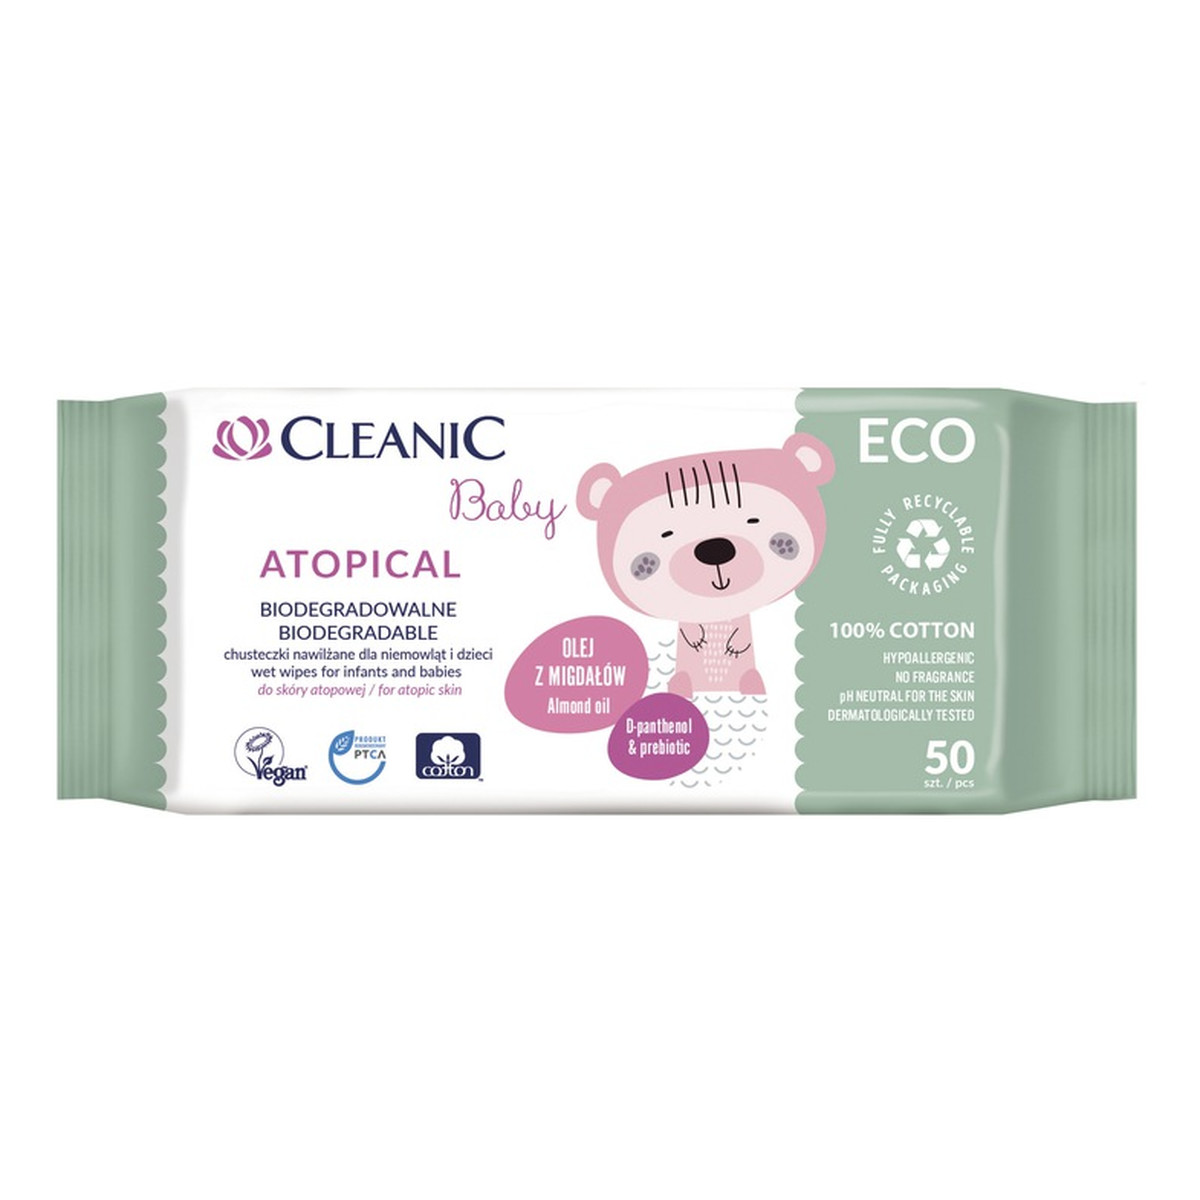 Cleanic Baby ECO Atopical Biodegradowalne chusteczki nawilżane dla niemowląt i dzieci do skóry atopowej 50 szt.